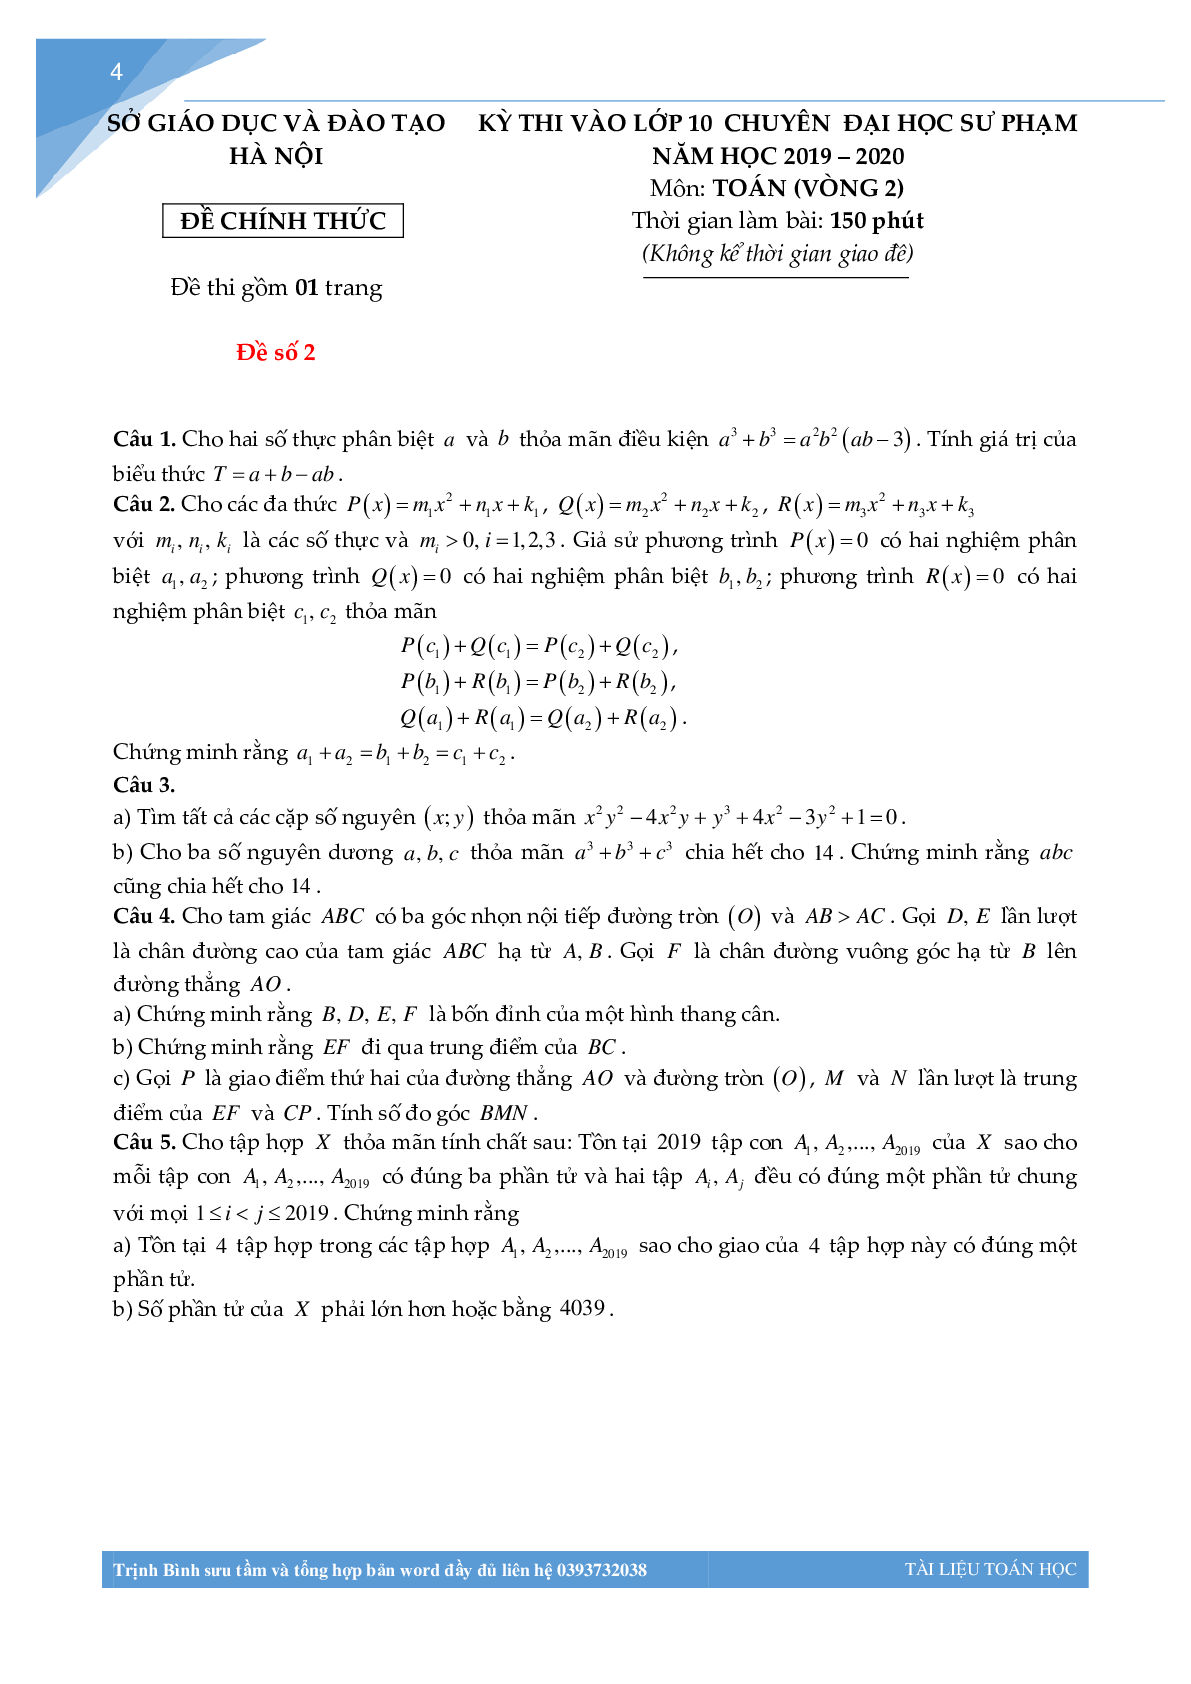 Bộ đề thi toán vào lớp 10 chuyên đại học sư phạm Hà Nội (trang 3)